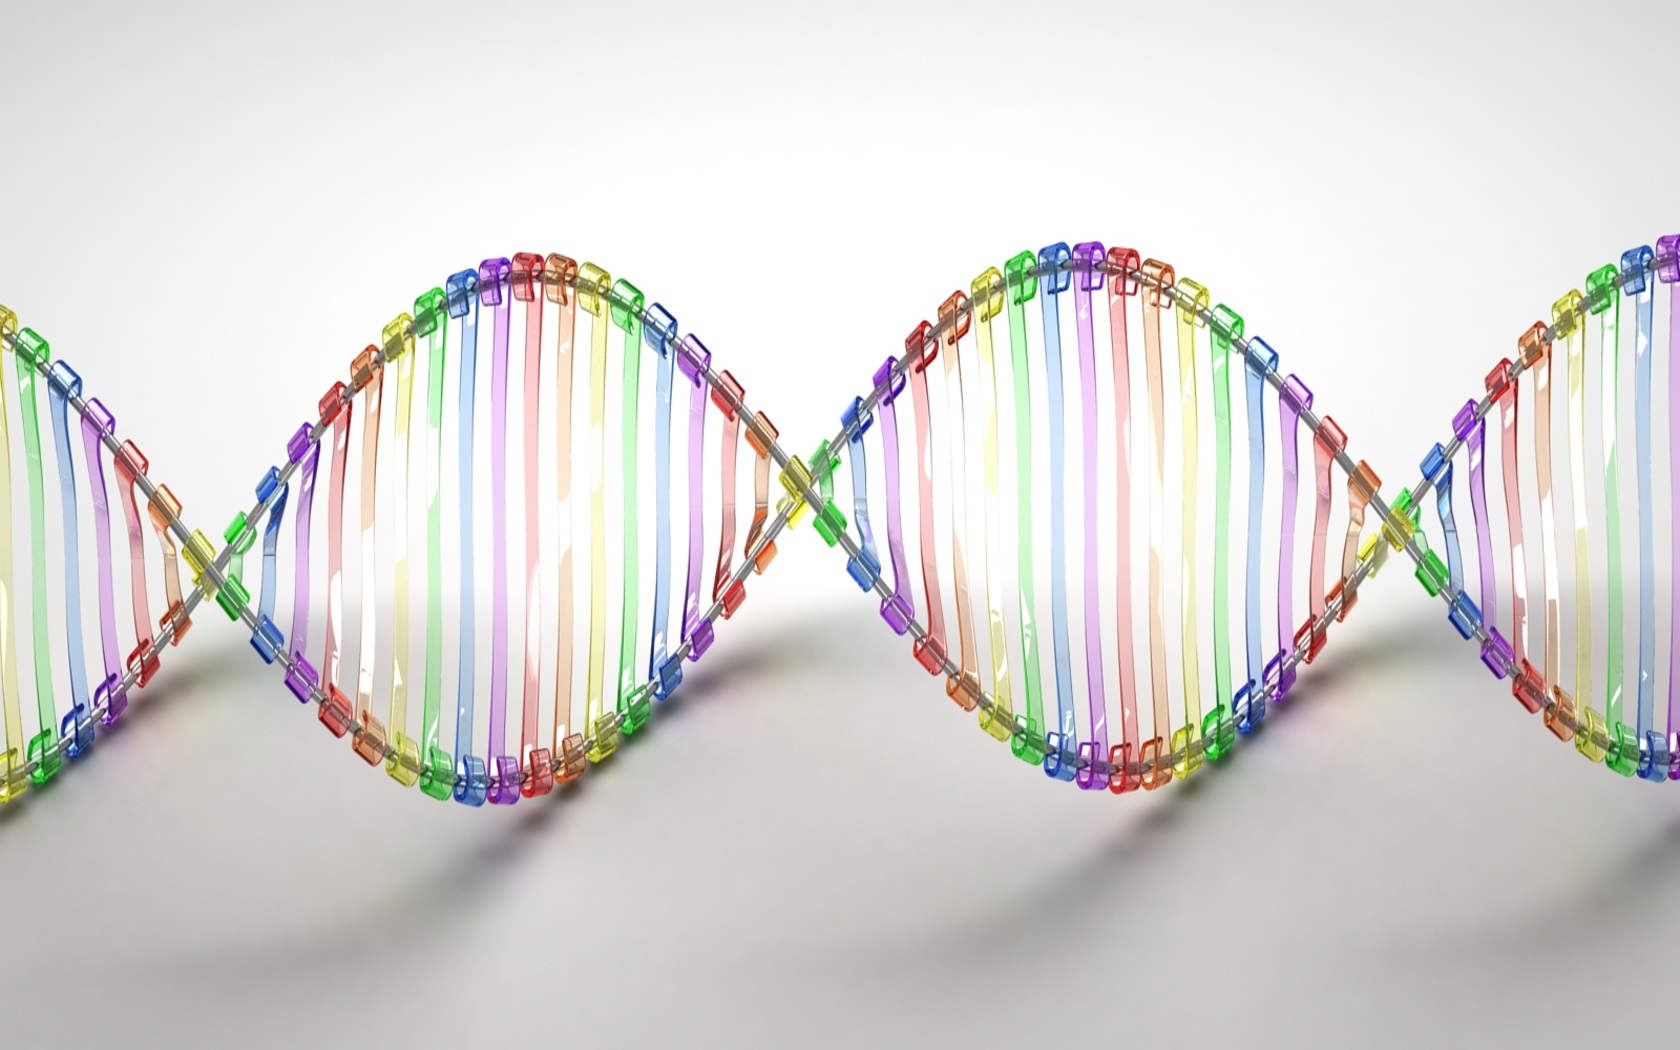 Synthetische Biologie, digitale Gensequenzen und Gene Drives – wo steht die Debatte? Eine kurze Analyse zum Auftakt der Zwischenverhandlungen der CBD diese Woche in Montreal